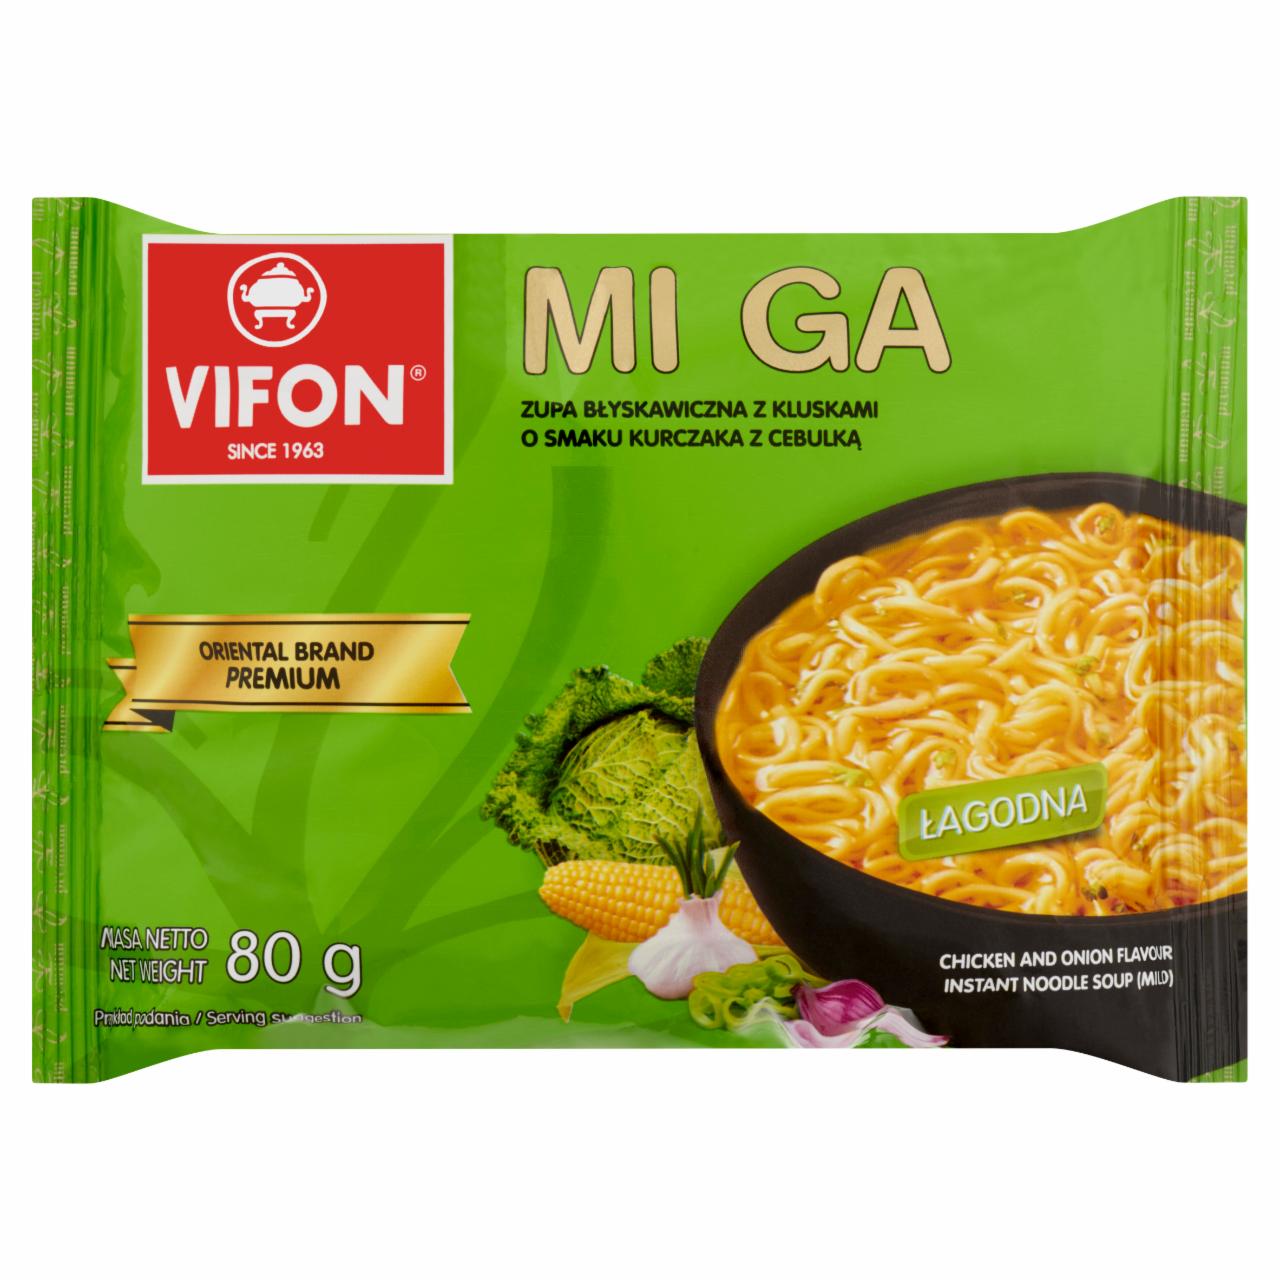 Képek - Vifon Mi Ga csirkehús és hagyma ízesítésű enyhe fűszerezésű instant tésztás leves 80 g